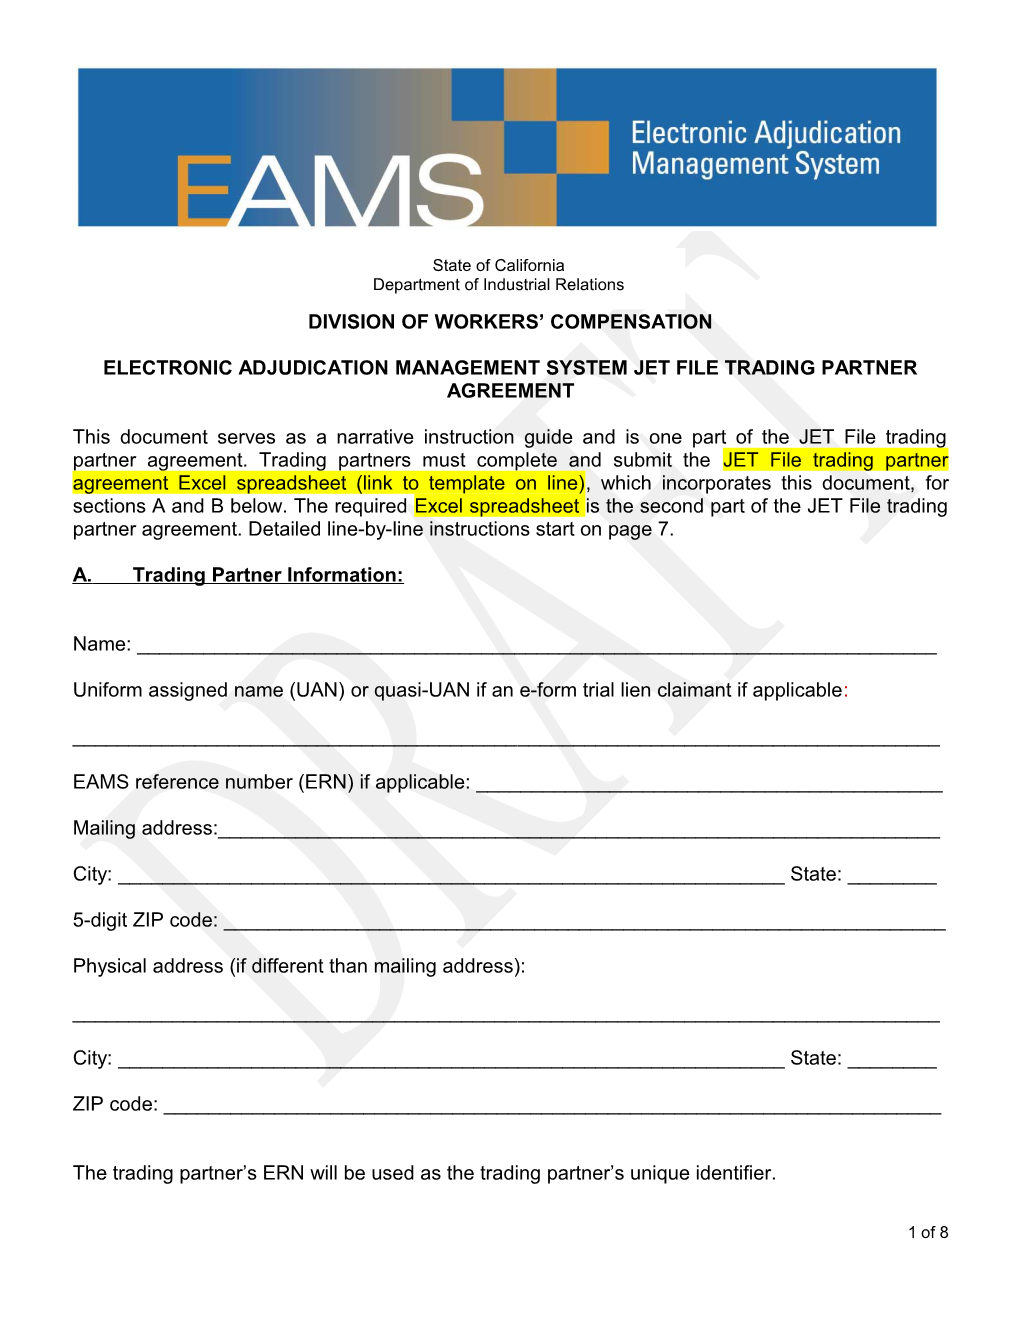 Electronic Adjudication Management System Jet File Trading Partner Agreement